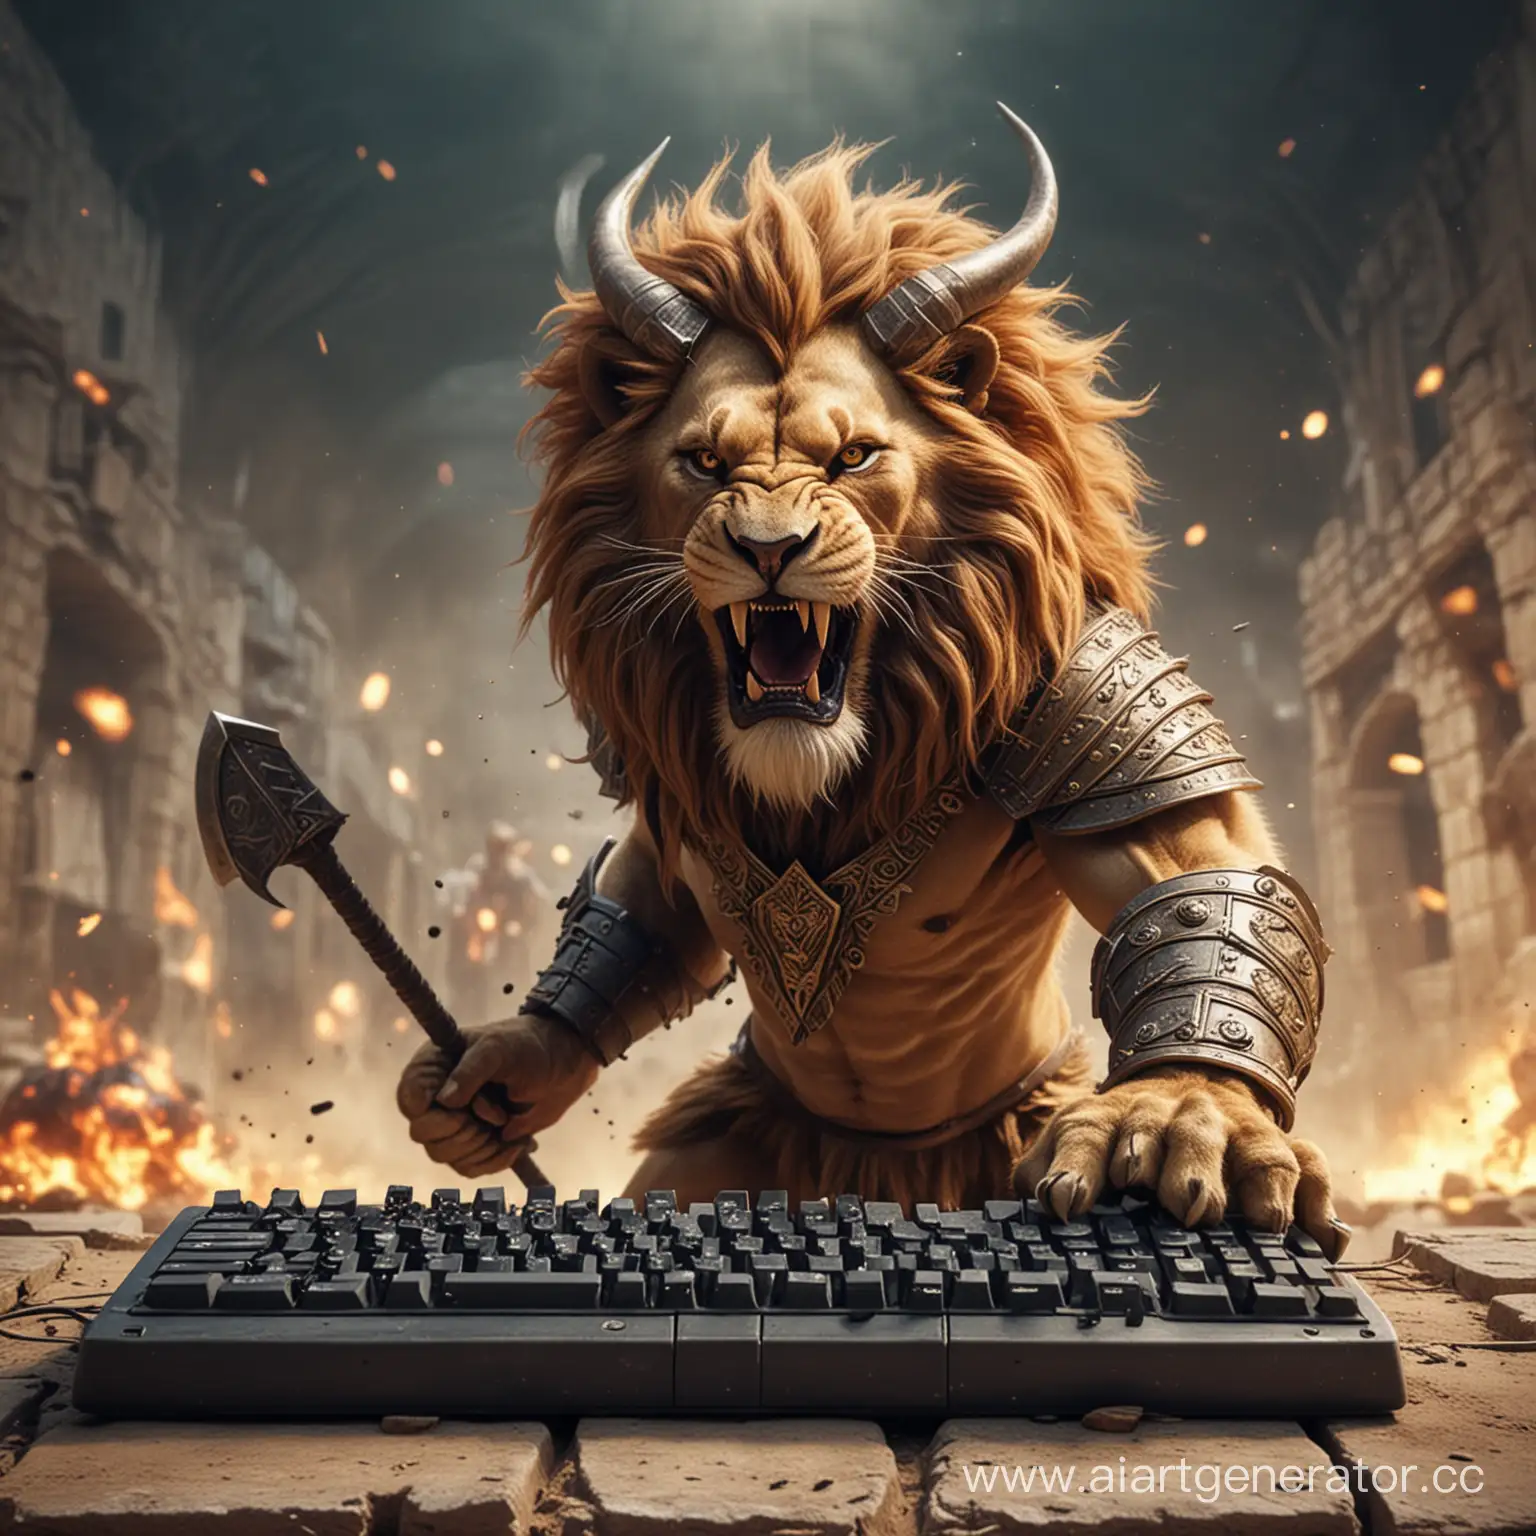 Лев с рогами, сражается на арене в виде клавиатуры с врагом